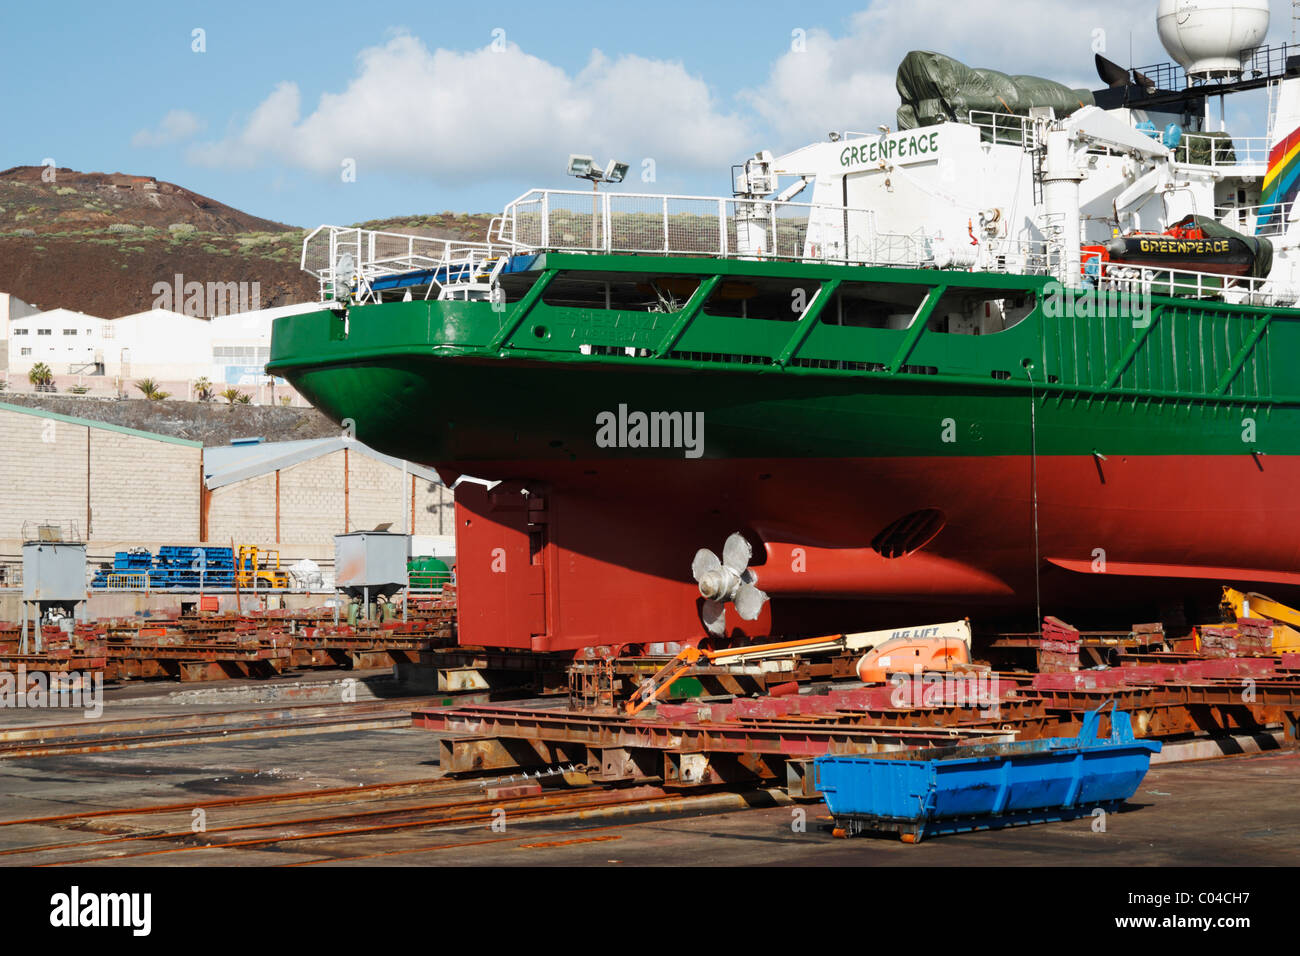 Greenpeace boat, The Esperanza, in drydock in Puerto de La Luz, Las Palmas, Gran Canaria, Canary Islands, Spain Stock Photo